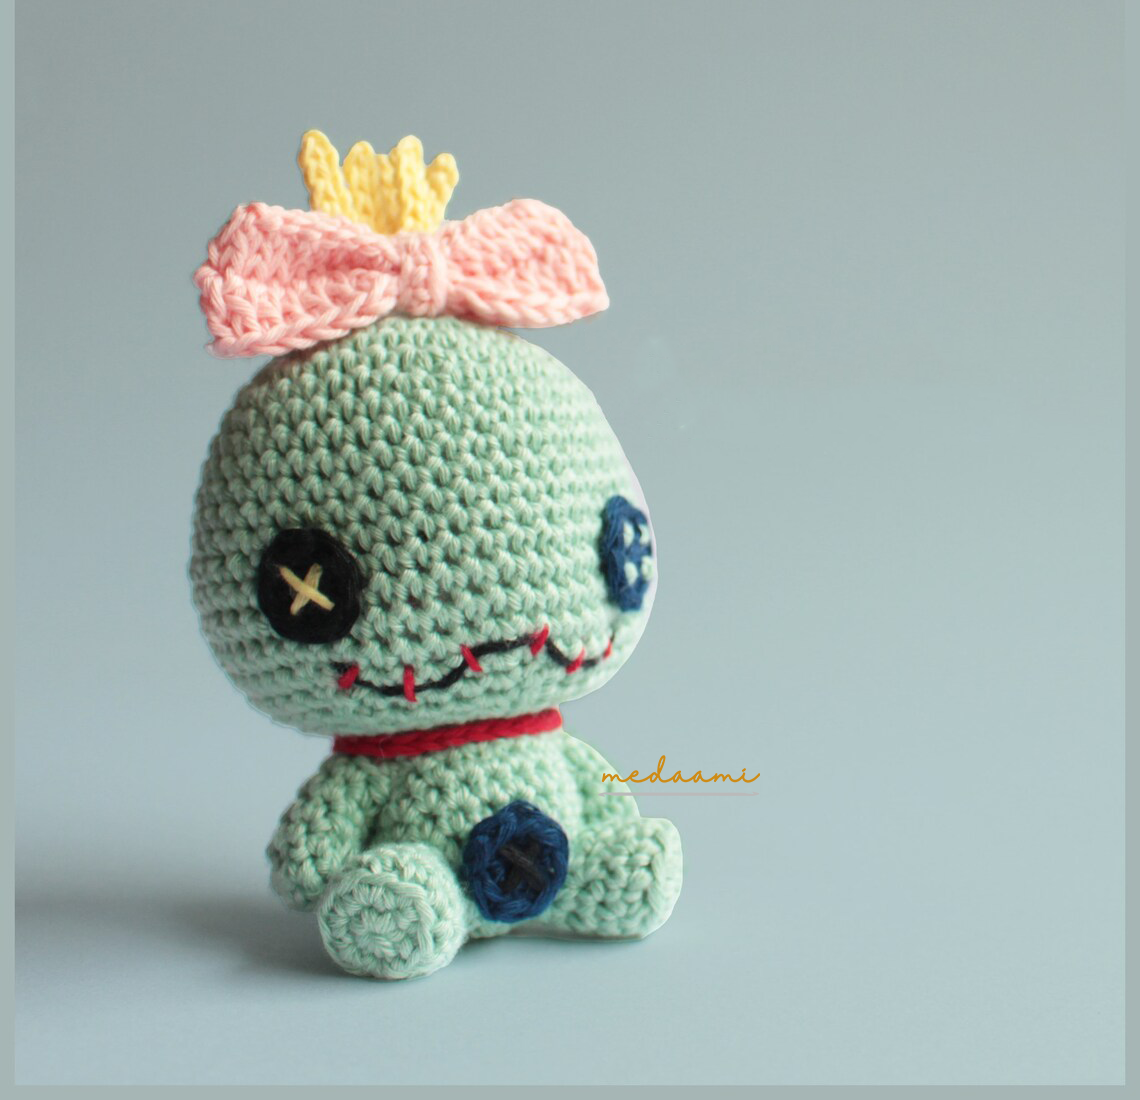 Stitch stuffy Amigurumi Crochet Patterns, Crochet Pattern - Inspire Uplift